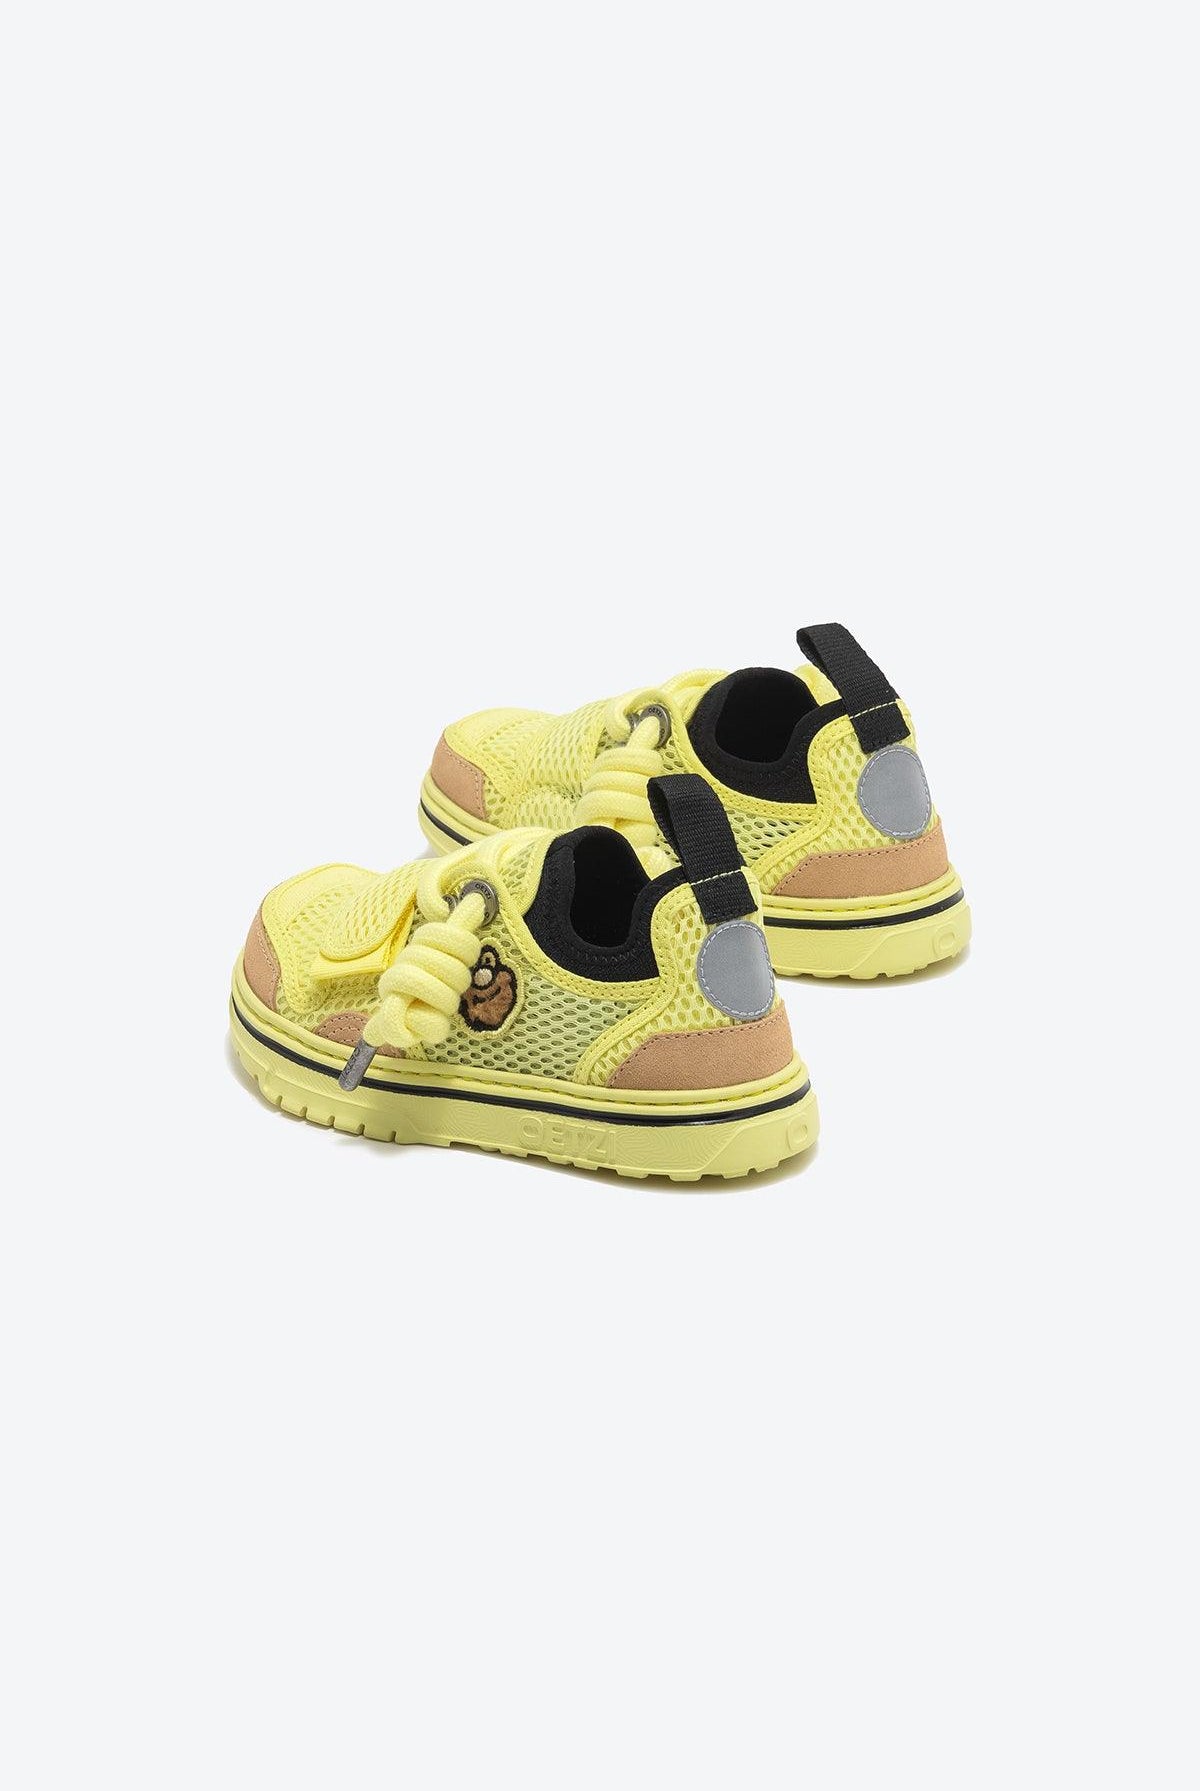 OETZI MINI Sneakers For Boy And Girl - Oetziceman